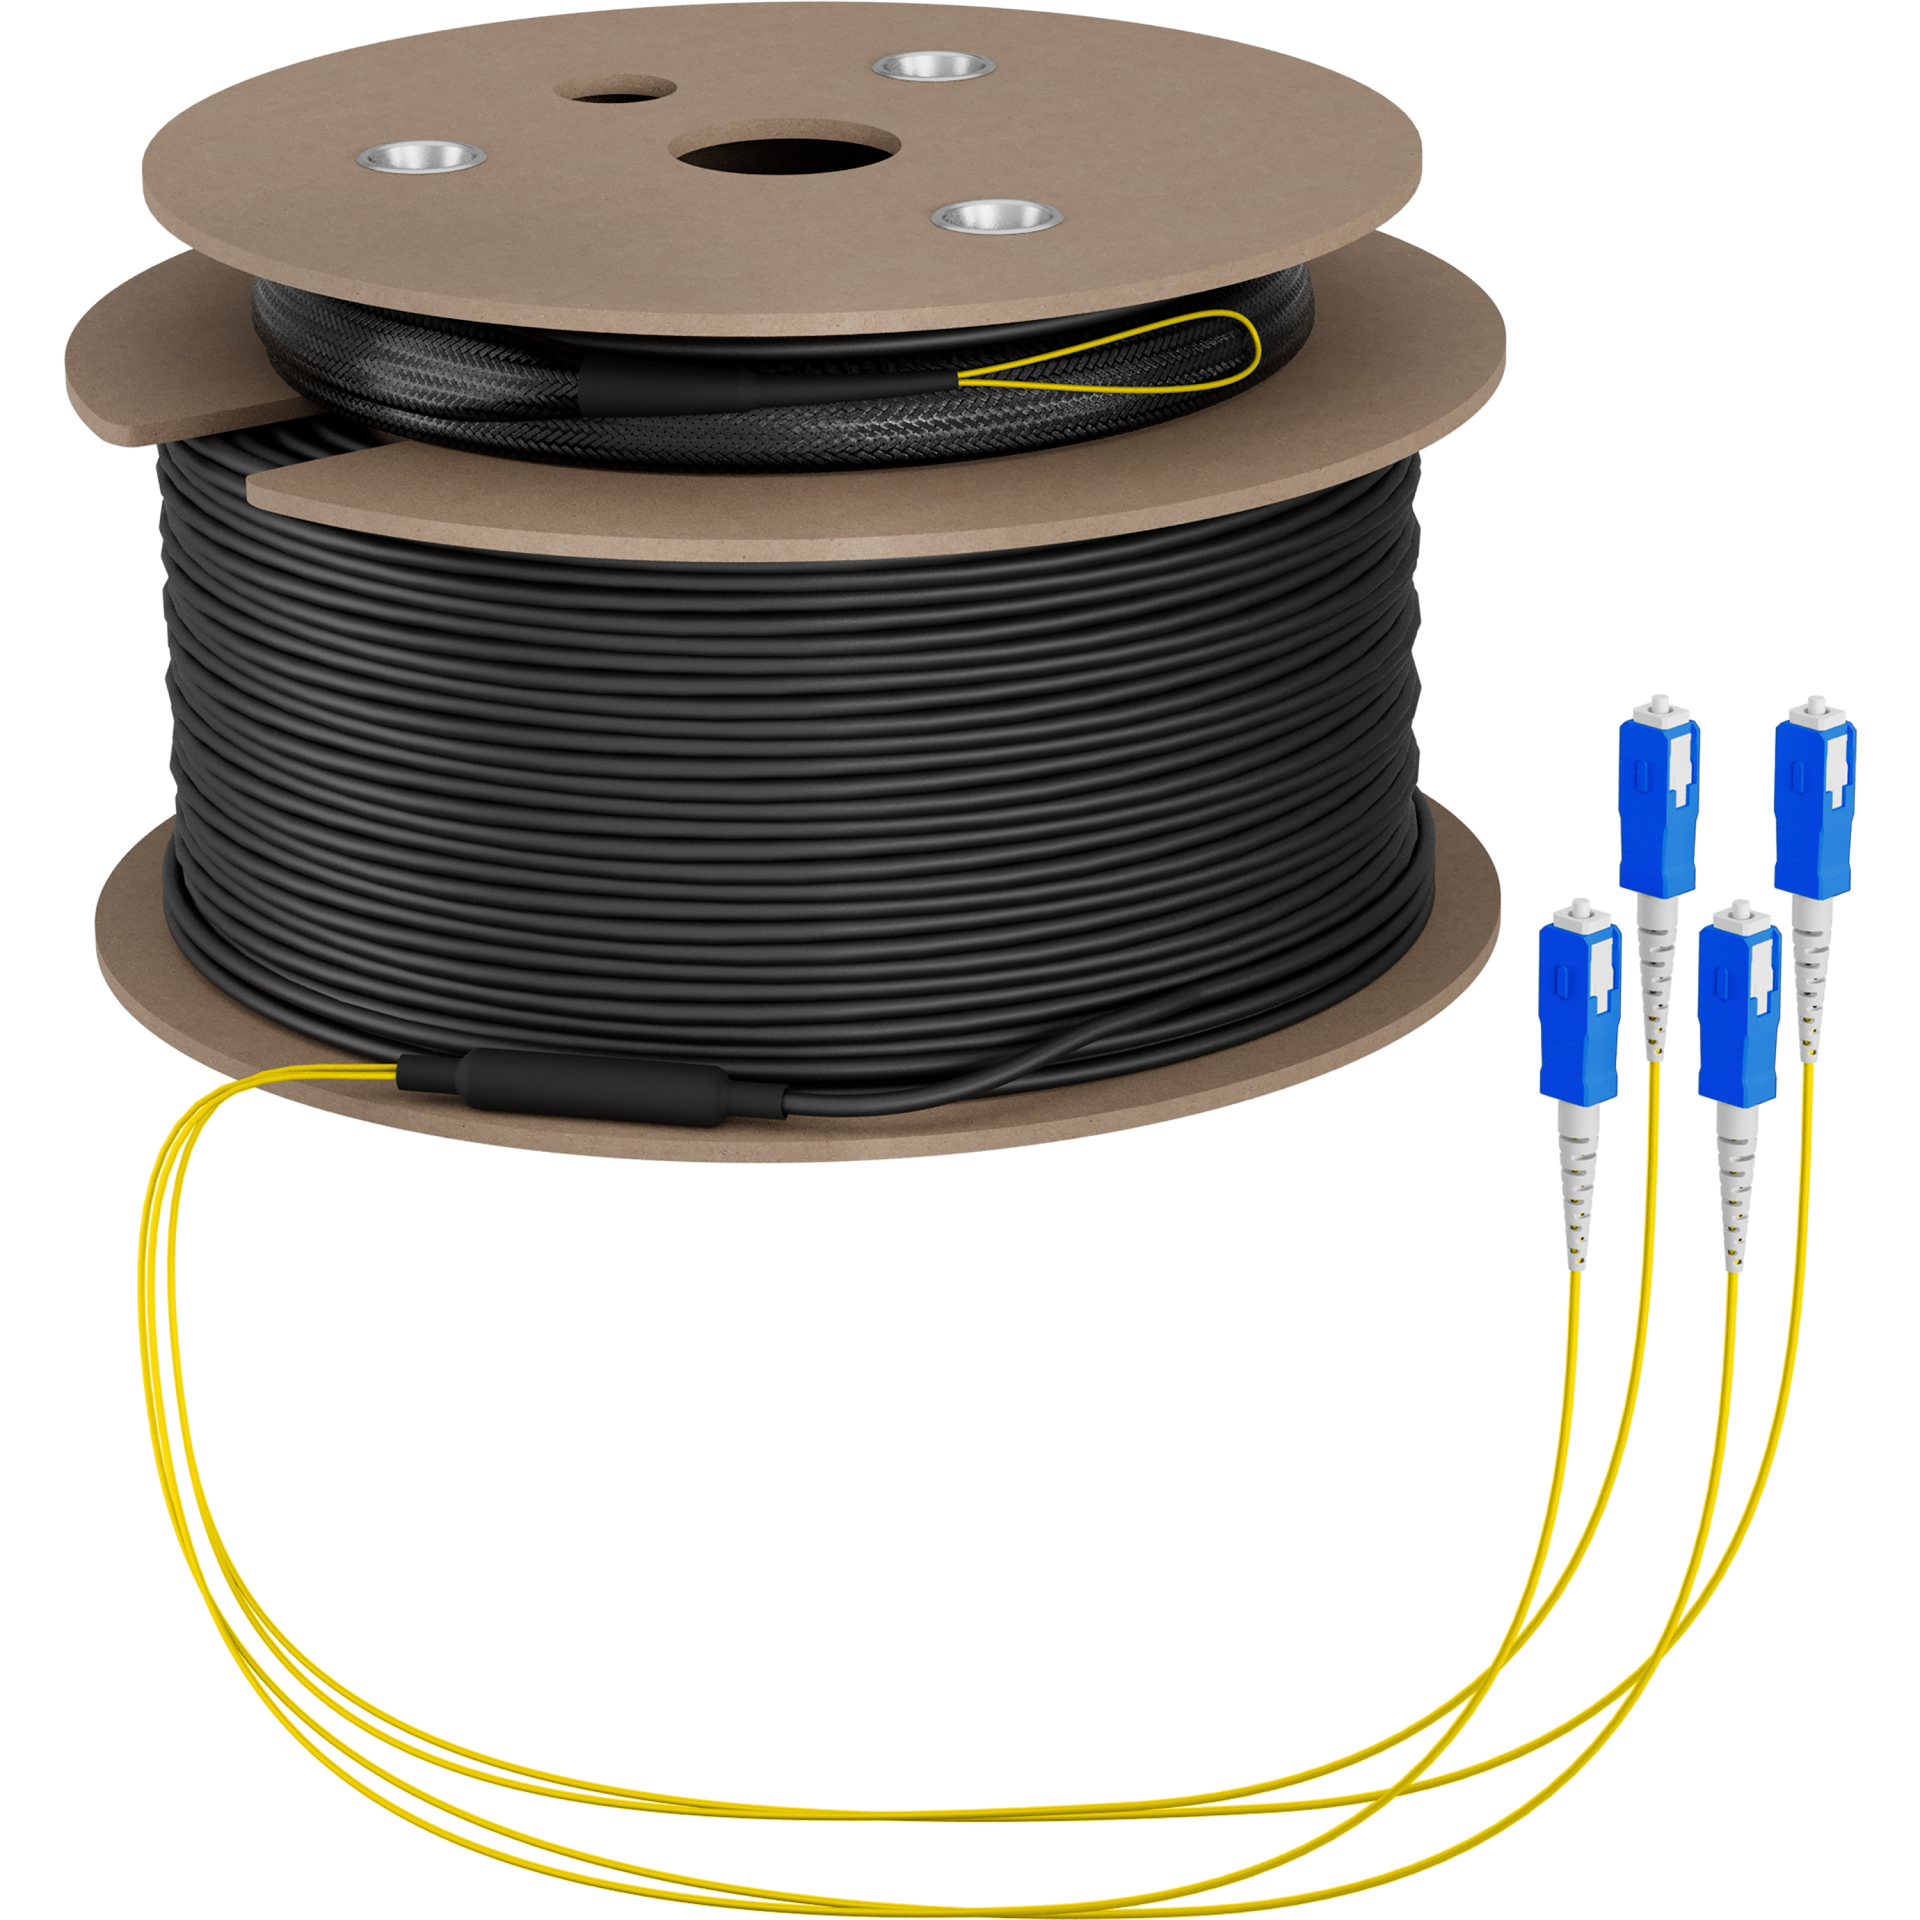 Trunk cable U-DQ(ZN)BH OS2 4E (1x4) SC-SC,60m Dca LSZH